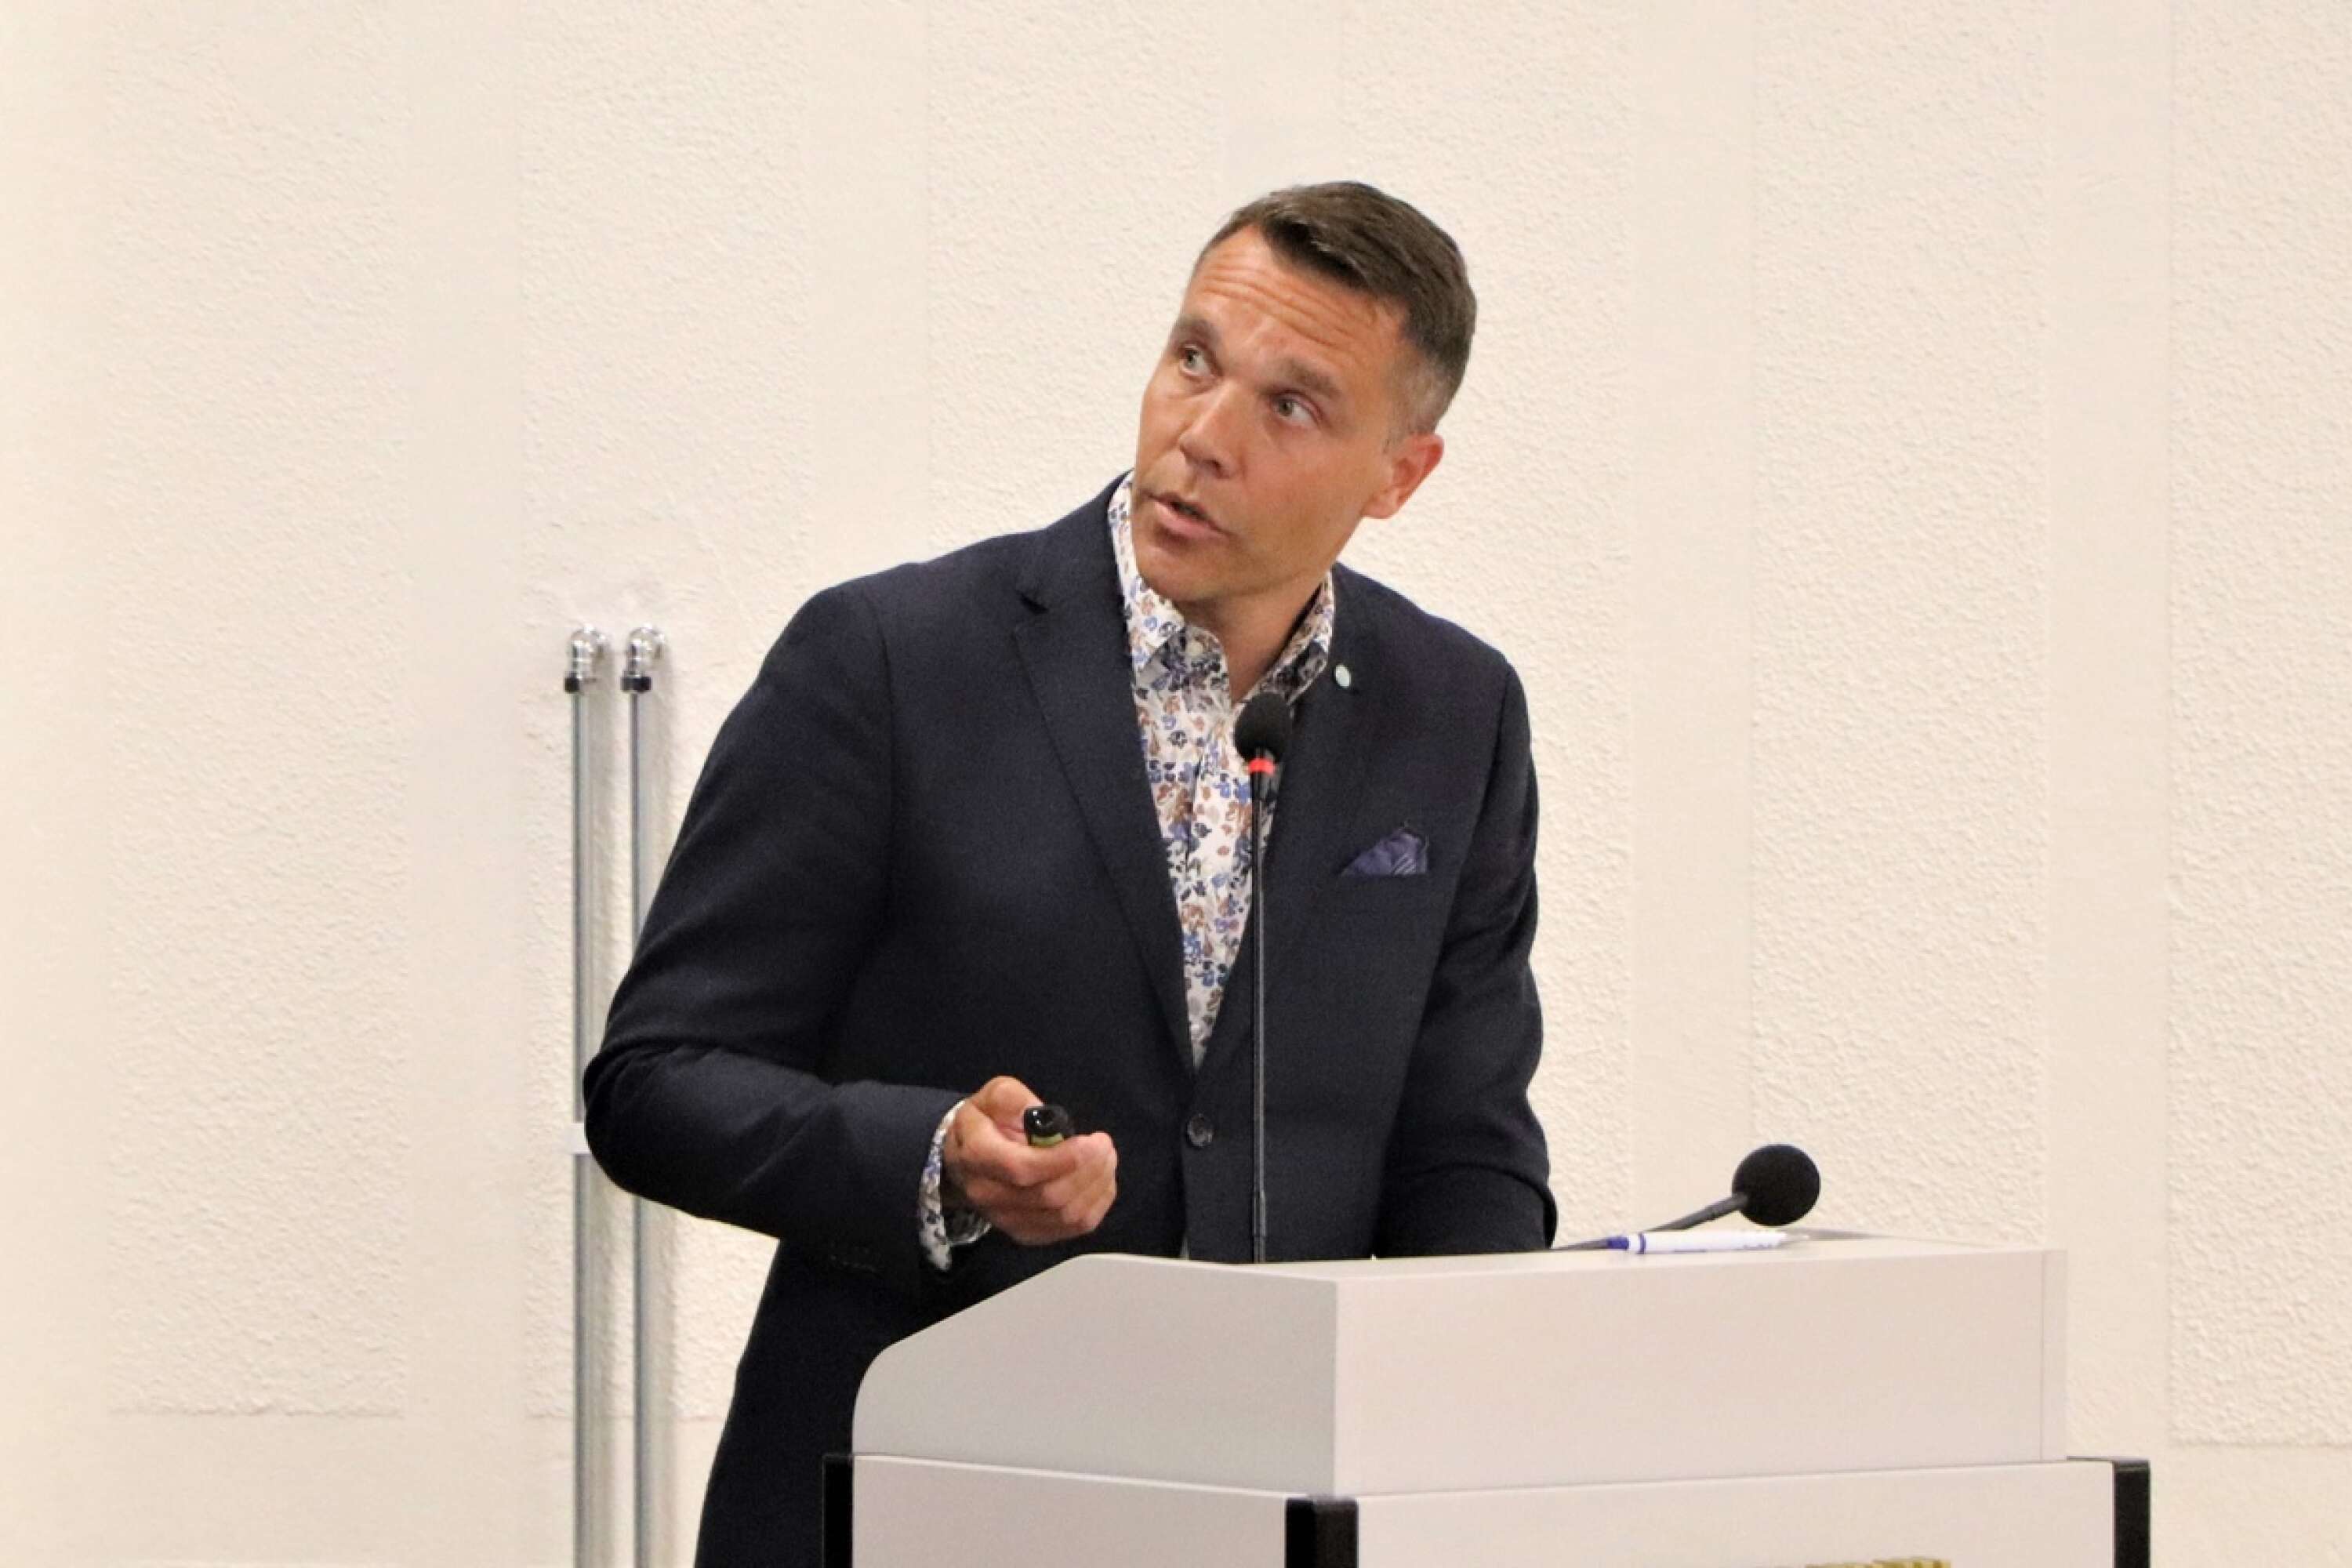 Förbundschef Pelle Holmström berättar om Miljösamverkan östra Skaraborgs verksamhet.